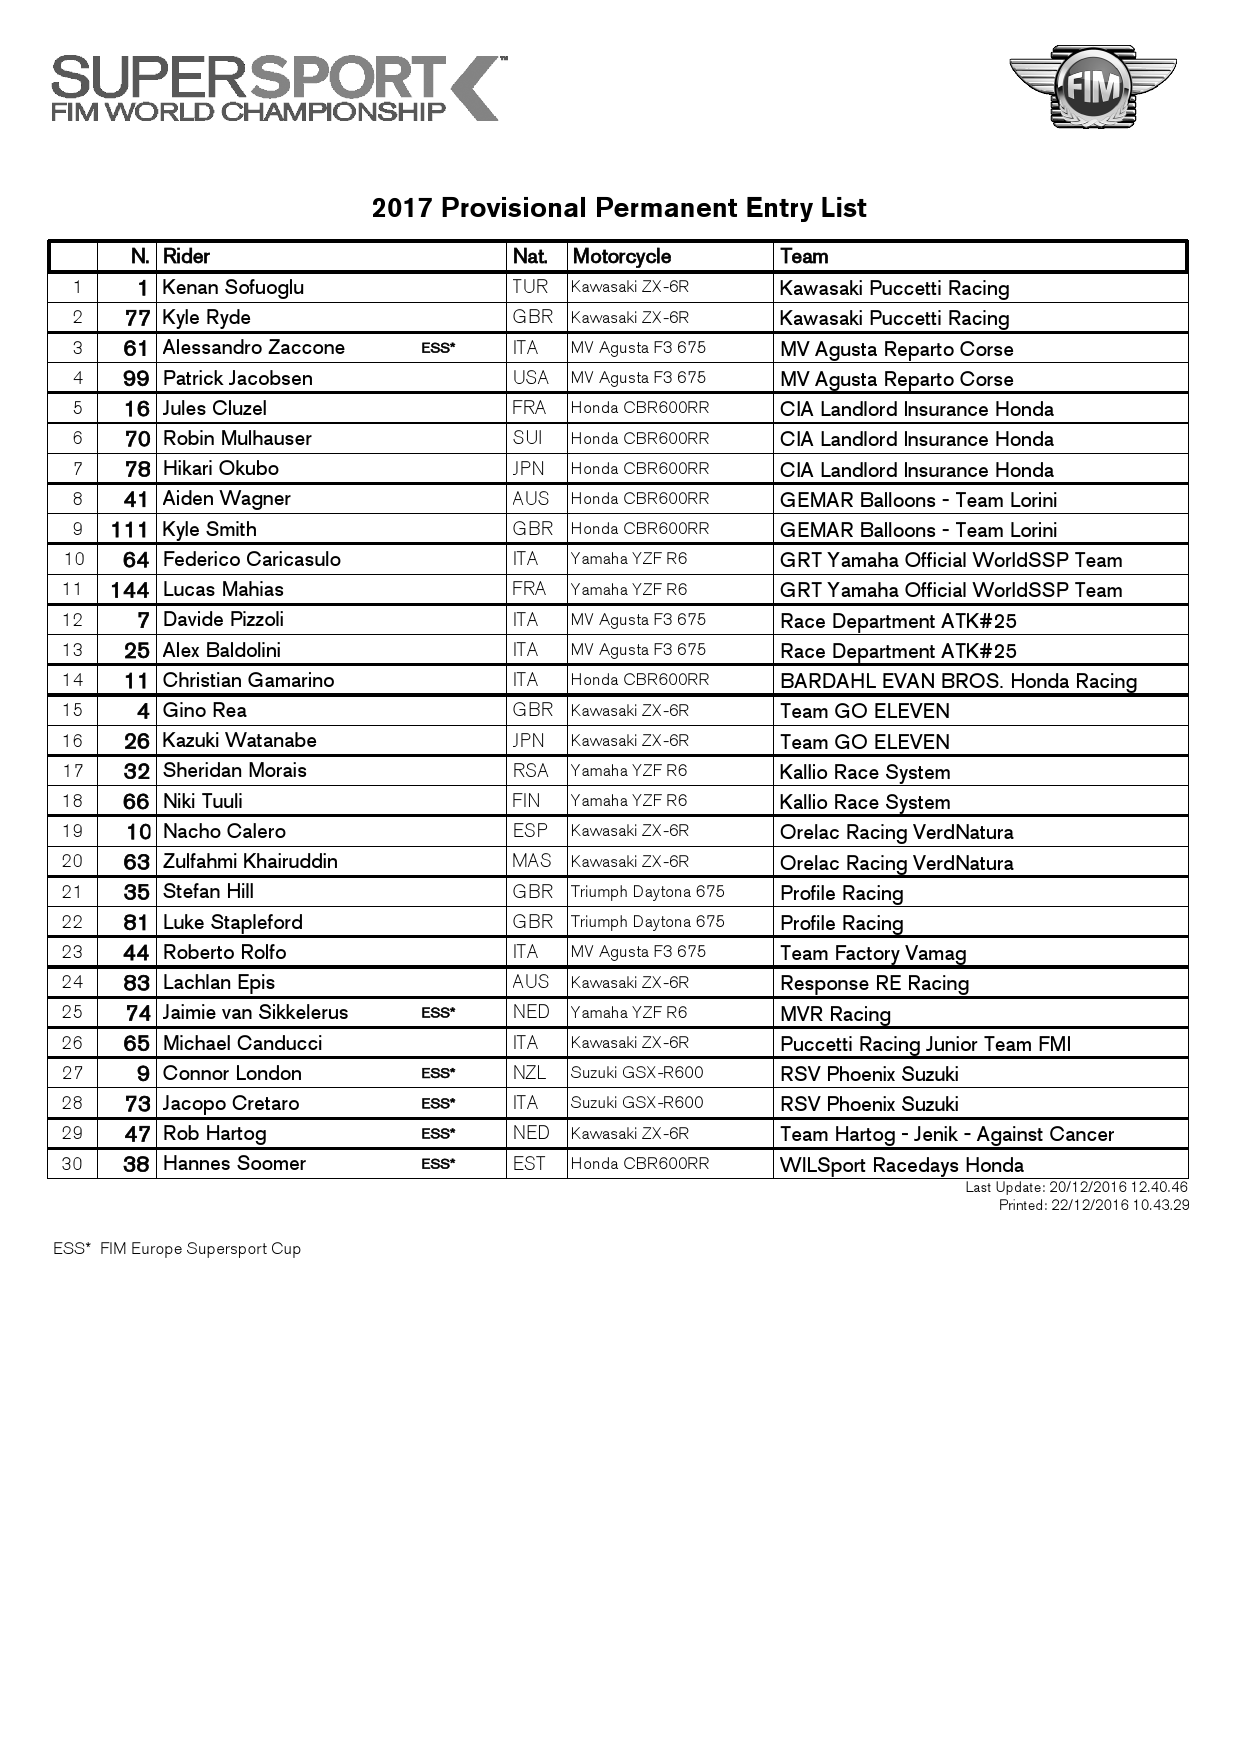 Список участников World Supersport 2017 от 22.01.2016